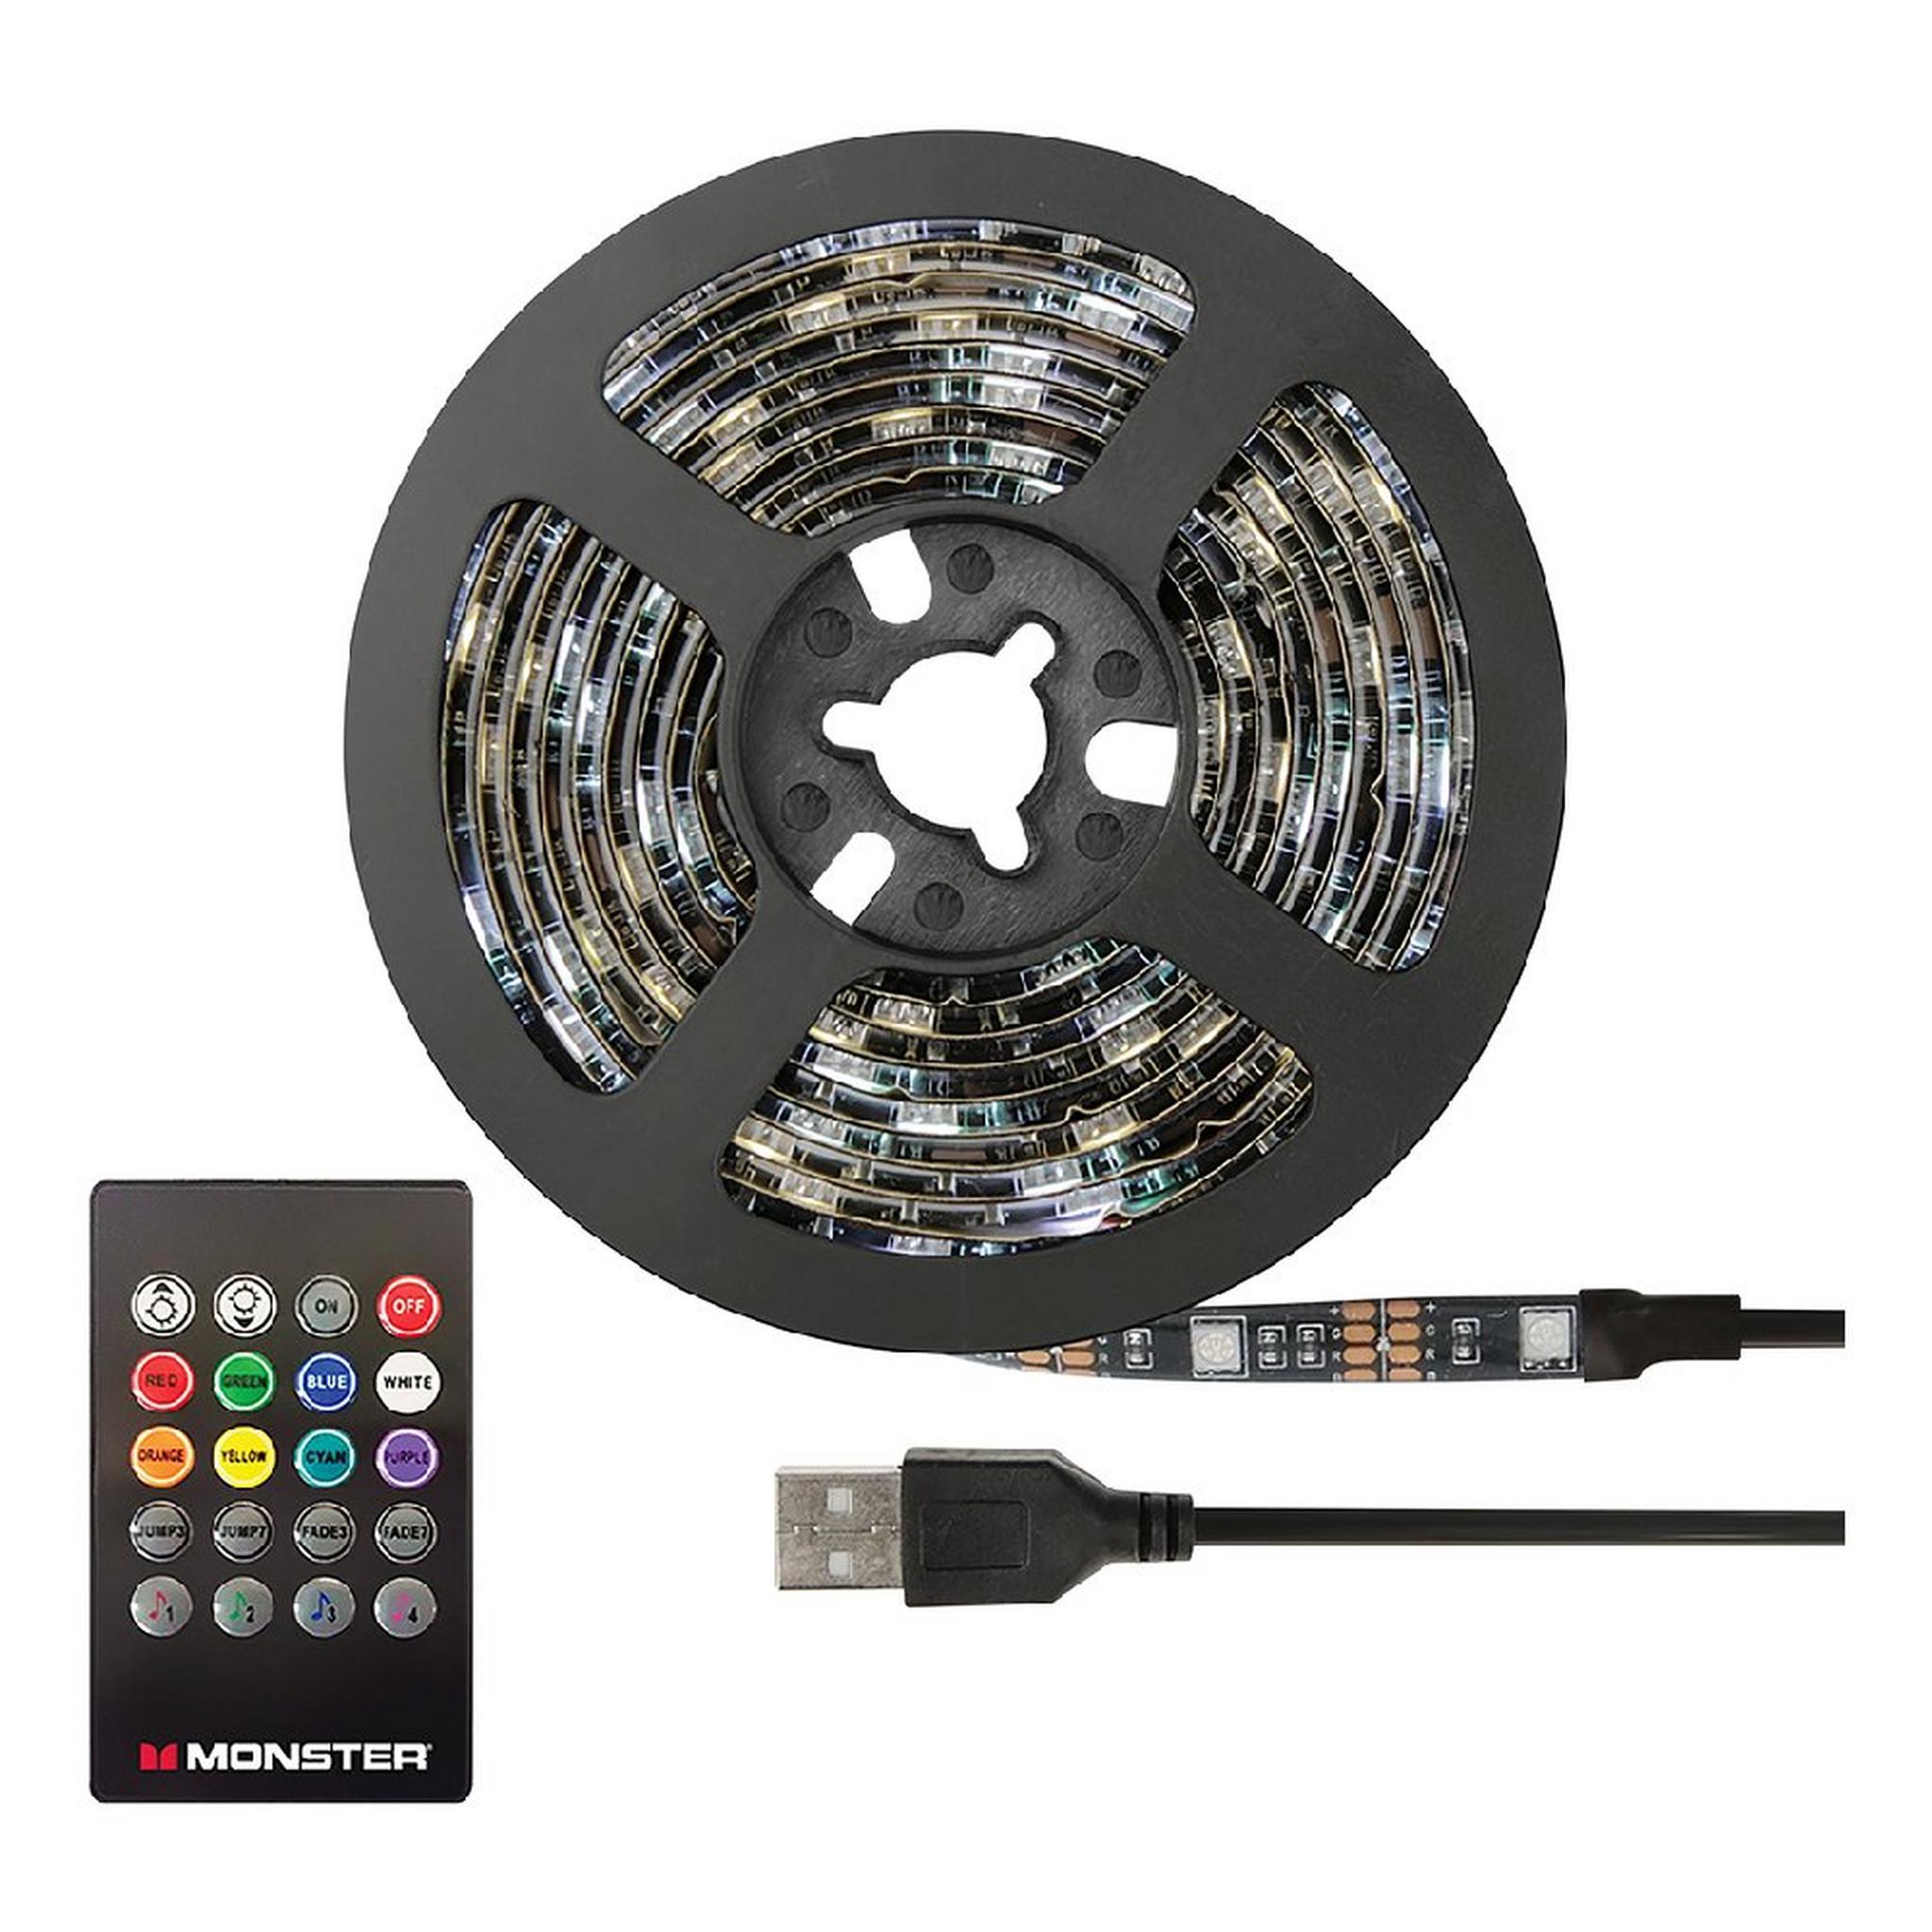 Monster Sound Reactive LED Light Strip, 2M, MLB7-1054- BLK - Multi Color